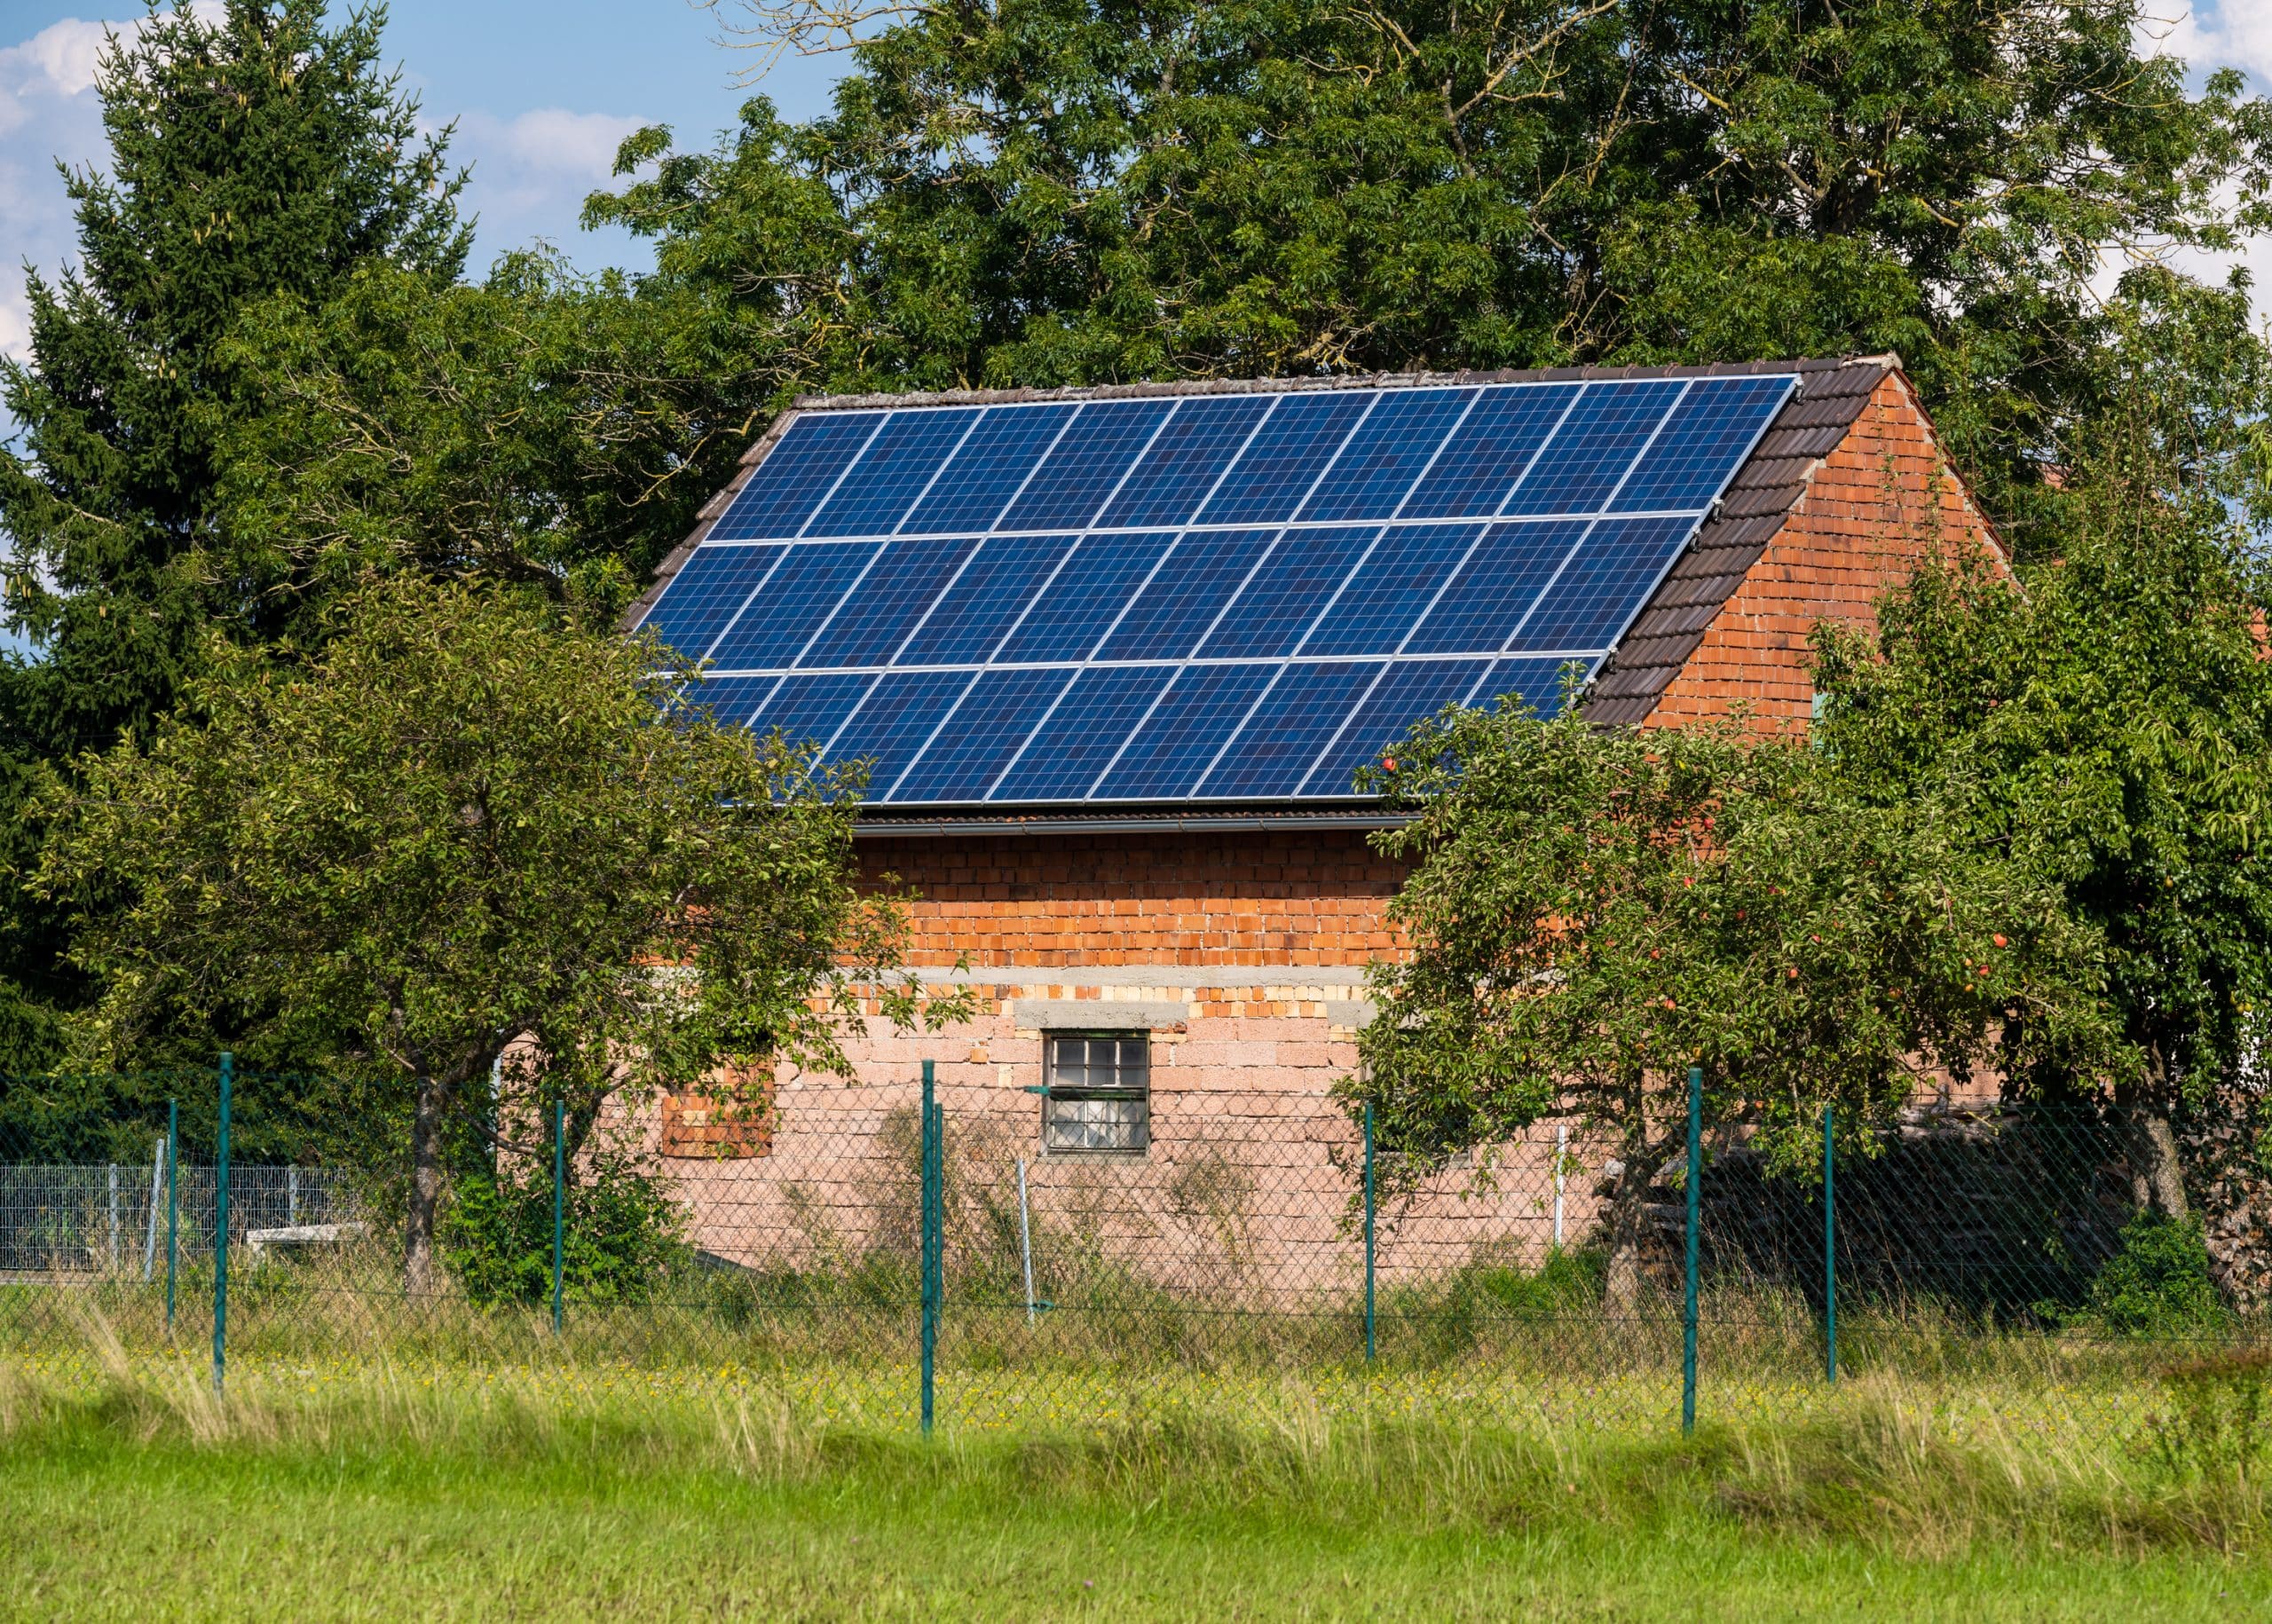 Quels sont les avantages d’utiliser de l’énergie solaire ?